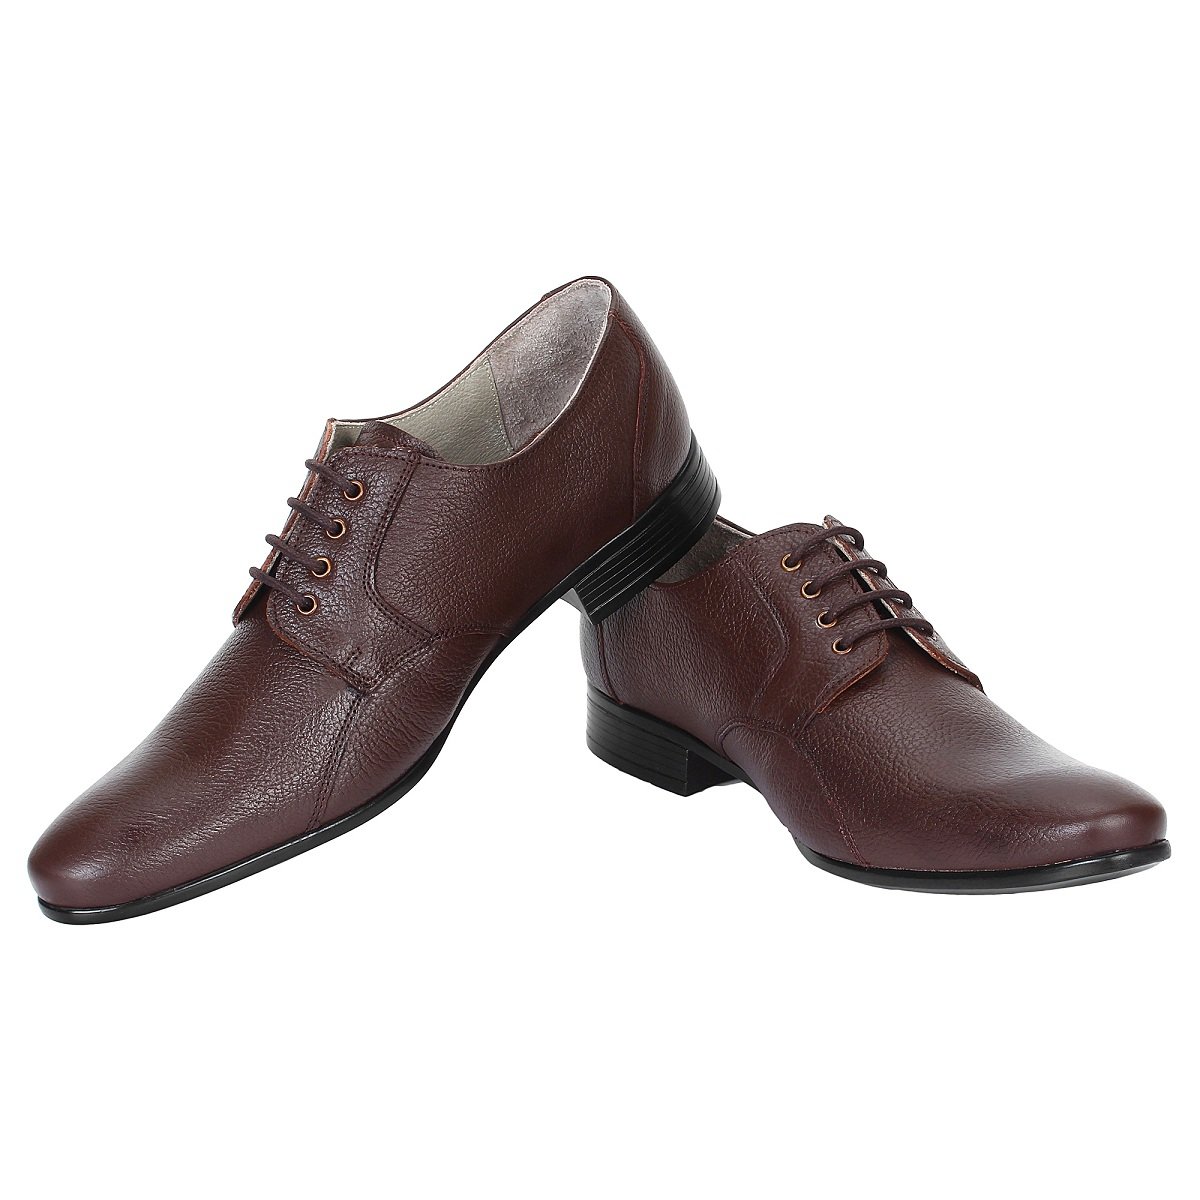 SeeandWear Stylish Shoes for Men -Minor Defect - SeeandWear